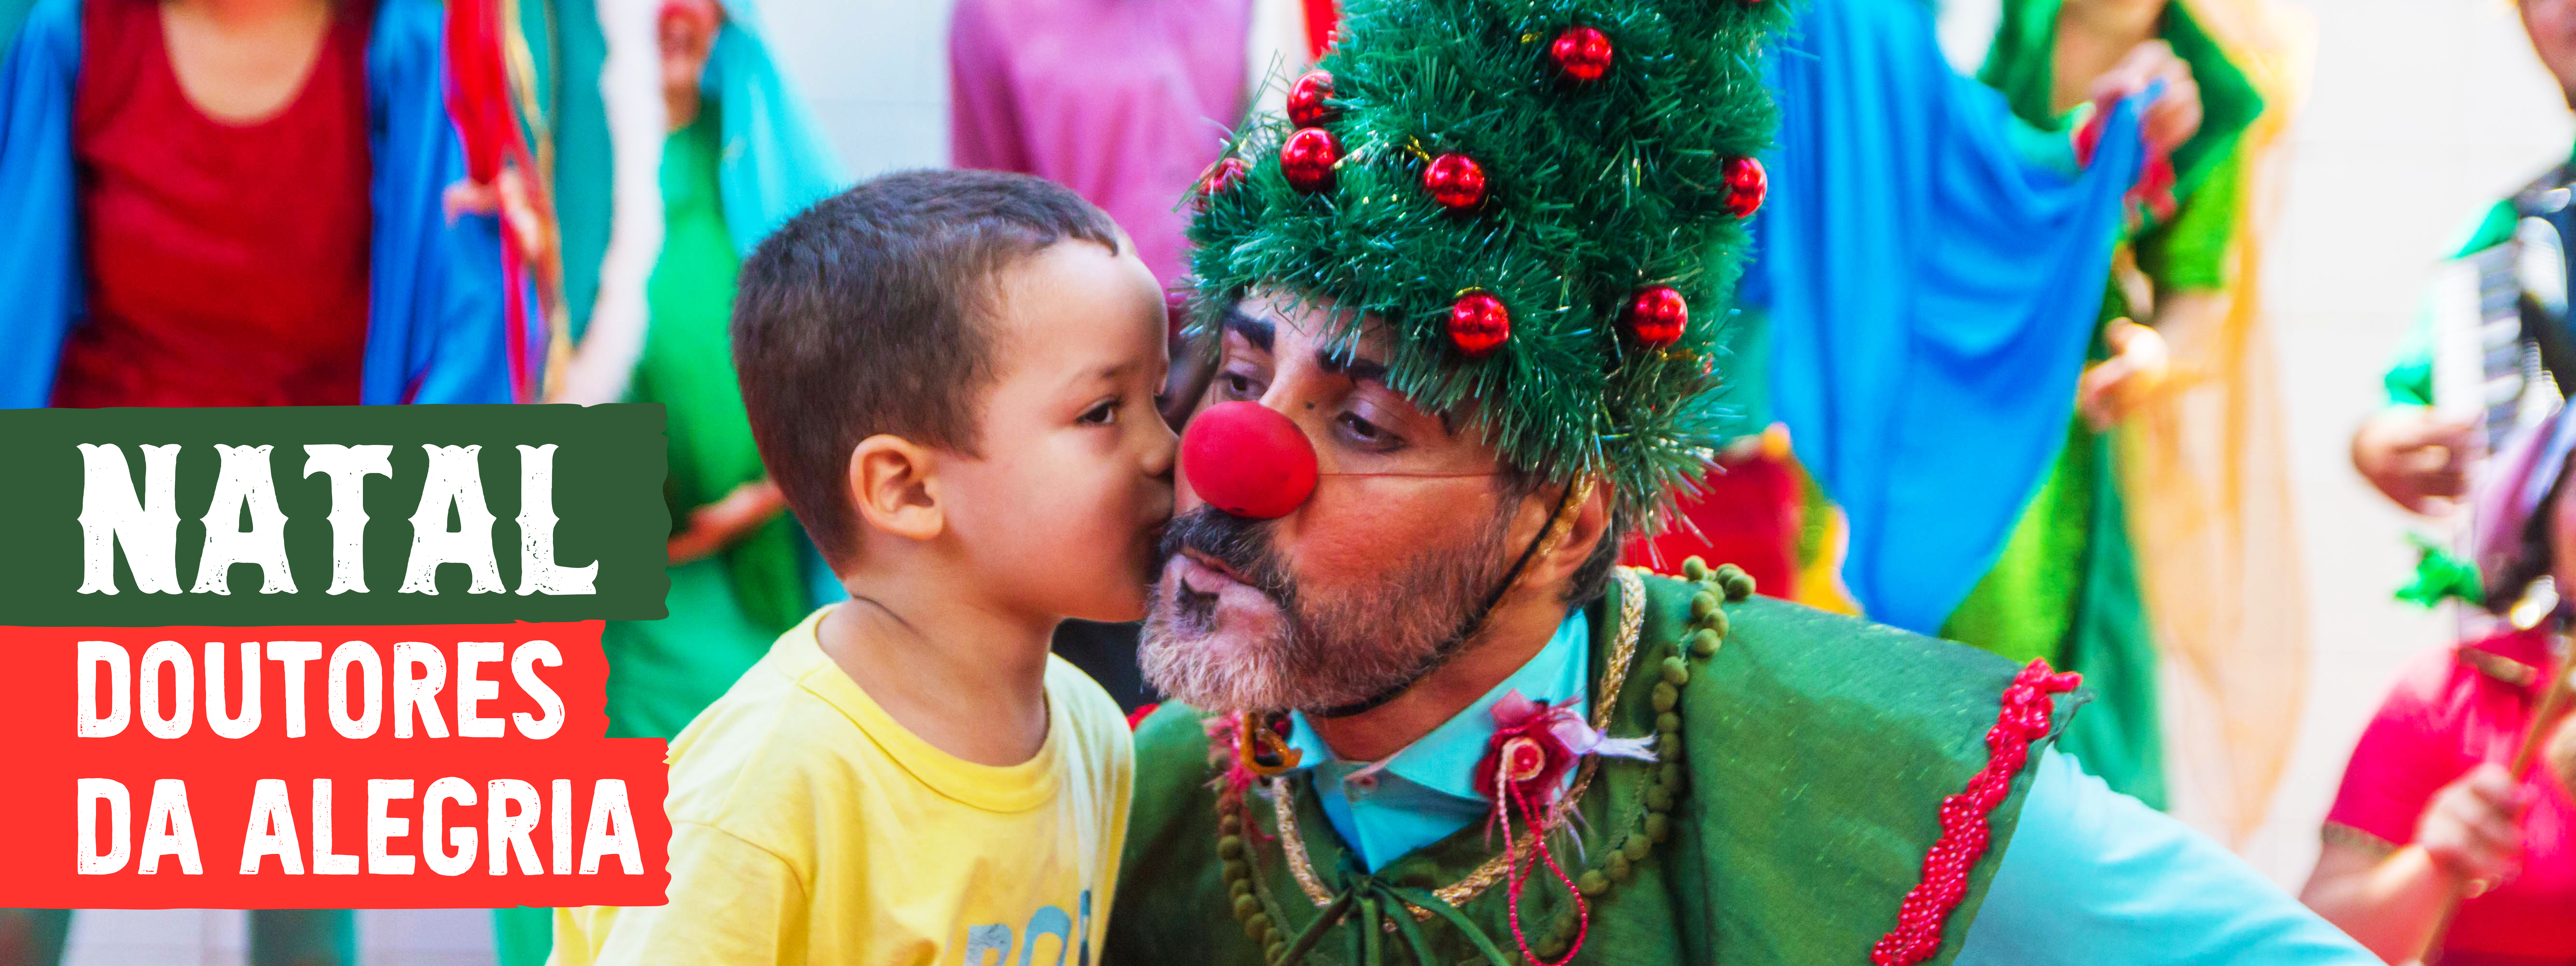 Doutores da Alegria leva cortejo e espetáculo natalinos a hospitais públicos de Recife, SP e RJ